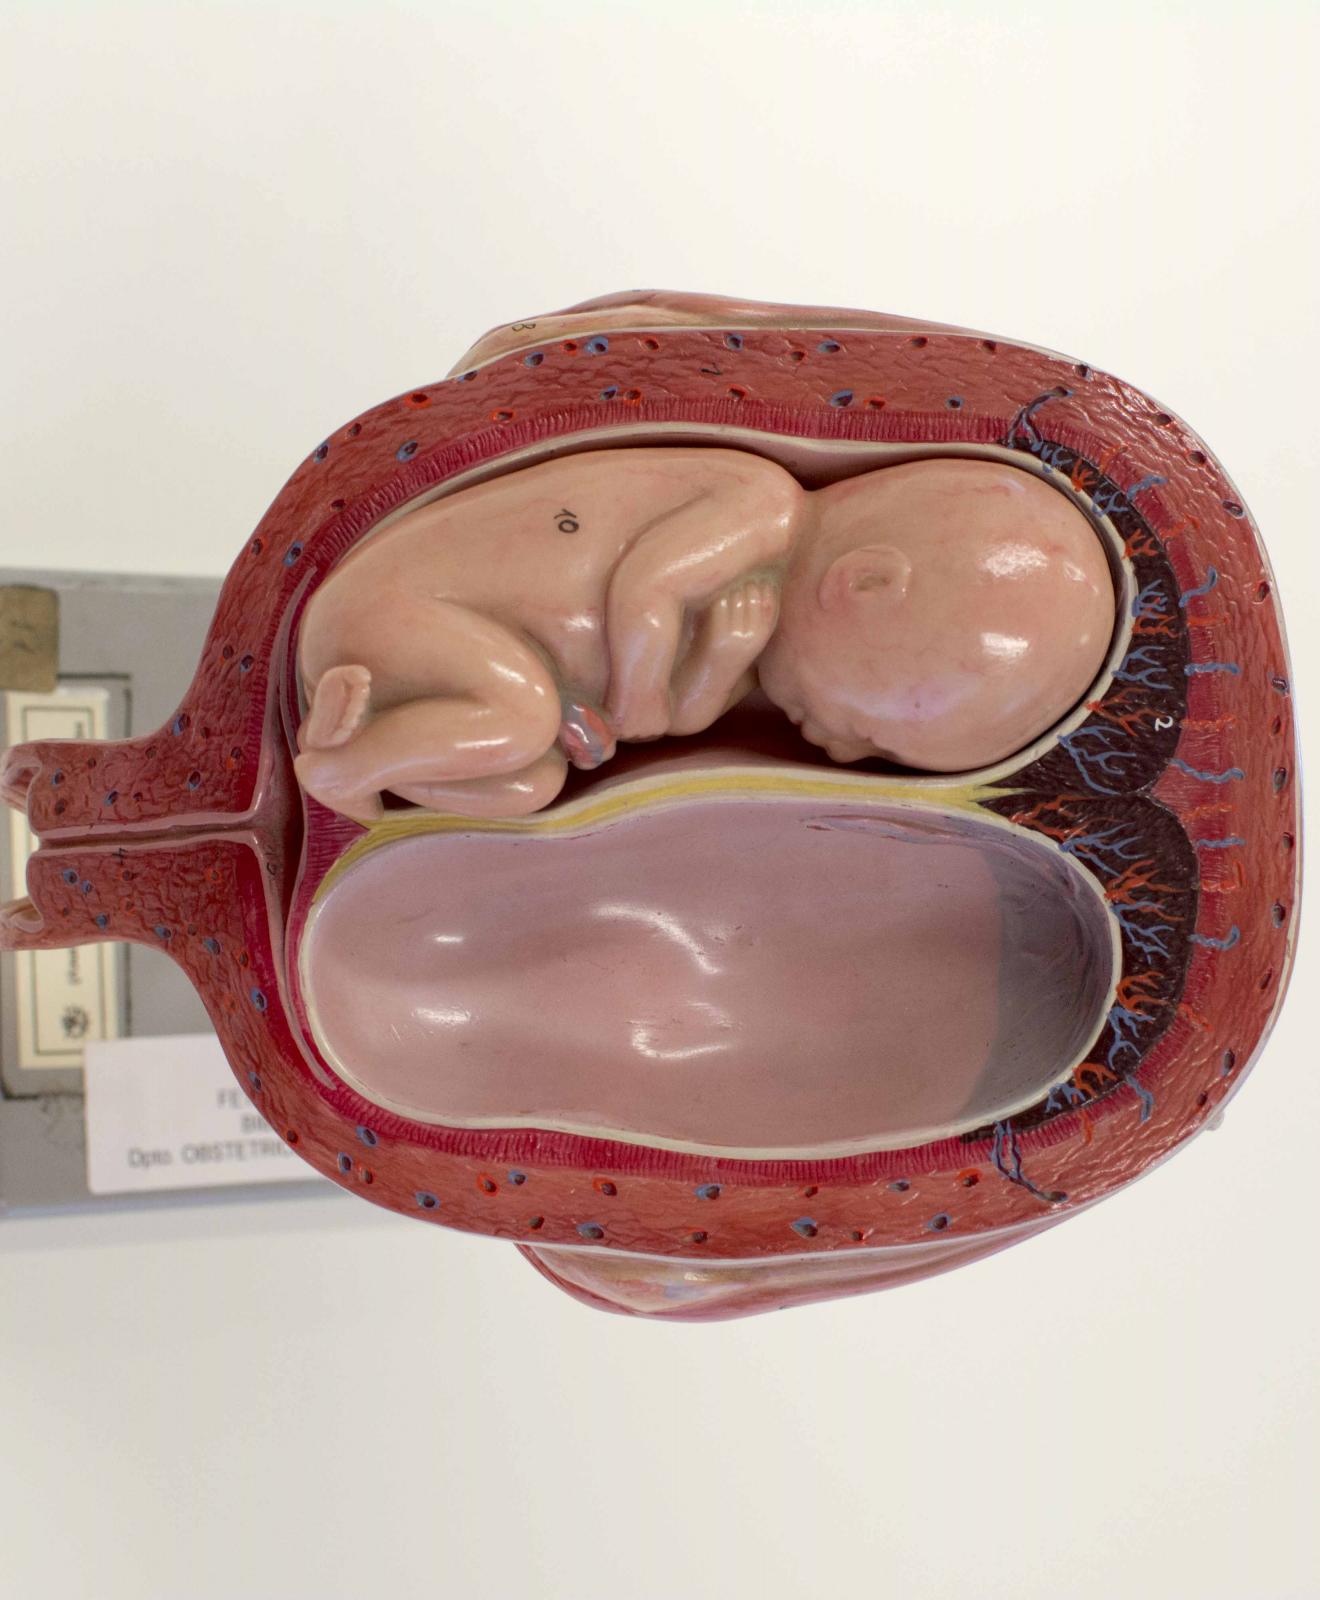 Recreación realista de la cavidad fetal en un embarazo de gemelos. El hueco en el que se mostraría el segundo feto está vacío. Al fondo se distingue una peana metálica, gris con etiquetas